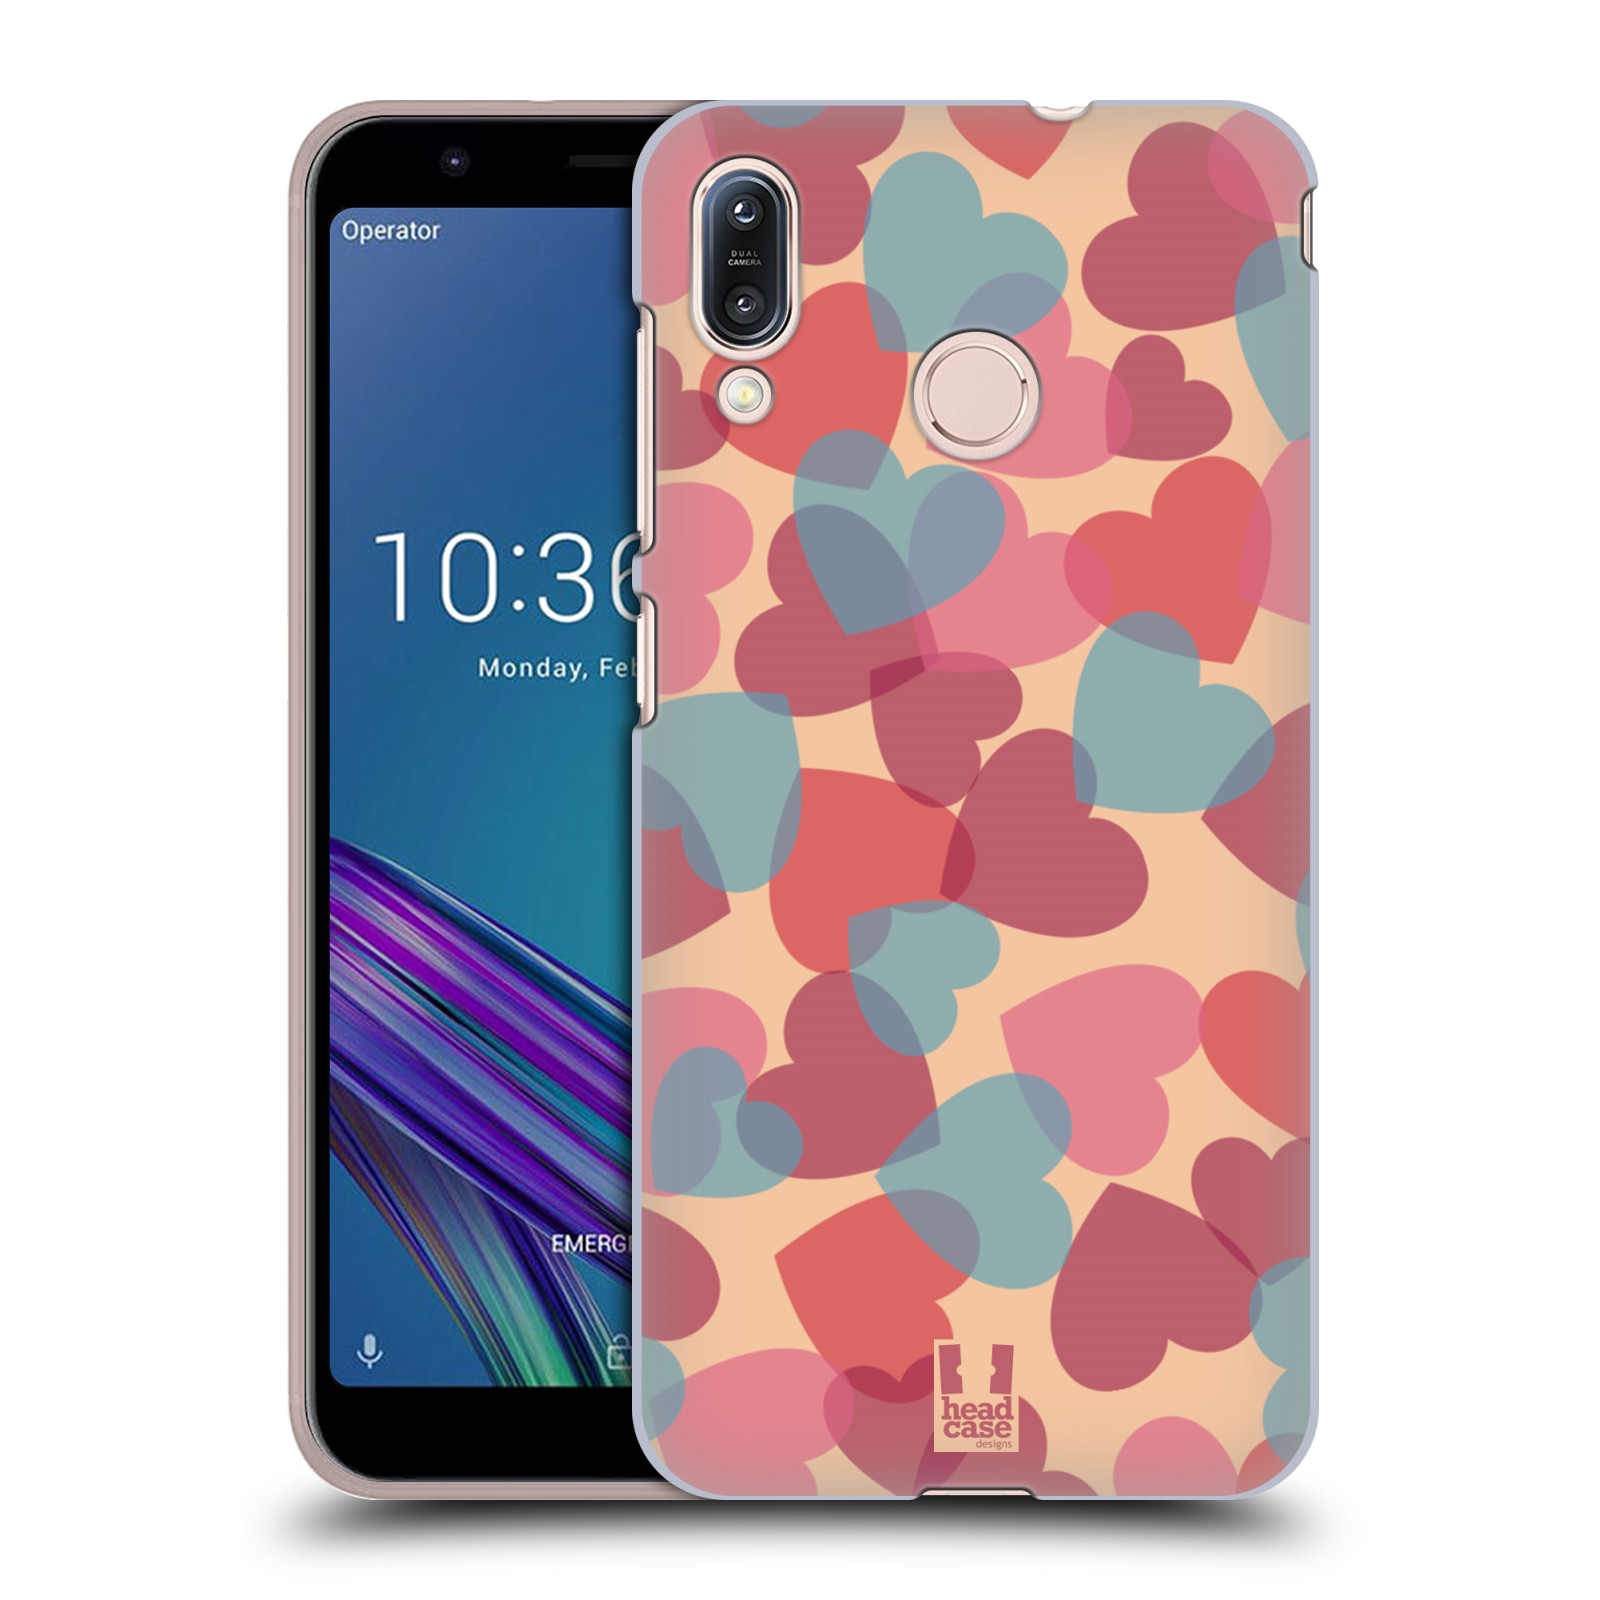 Zadní obal pro mobil Asus Zenfone Max (M1) ZB555KL - HEAD CASE - Růžová srdíčka kreslený vzor